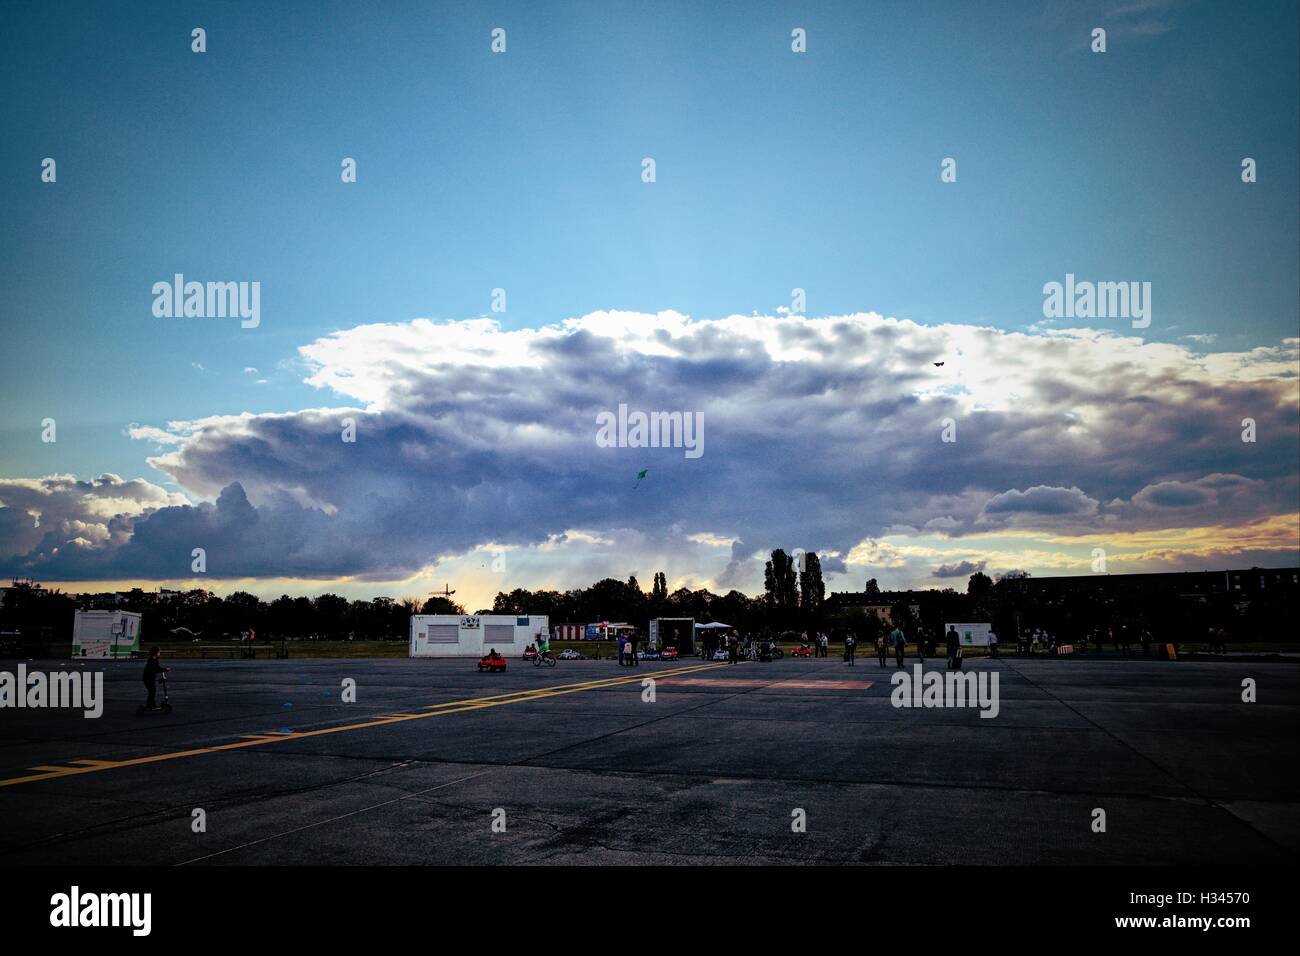 Scene from Tempelhof, Berlin, Germany Stock Photo